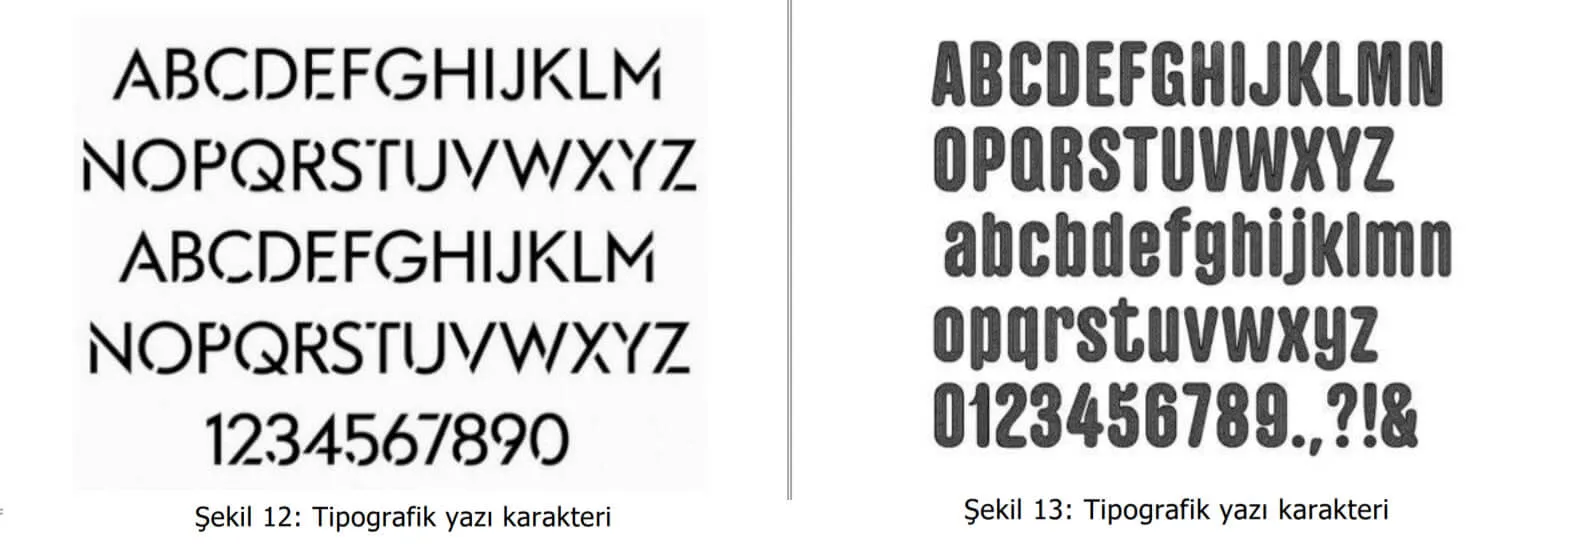 tipografik yazı karakter örnekleri-başakşehir web tasarım